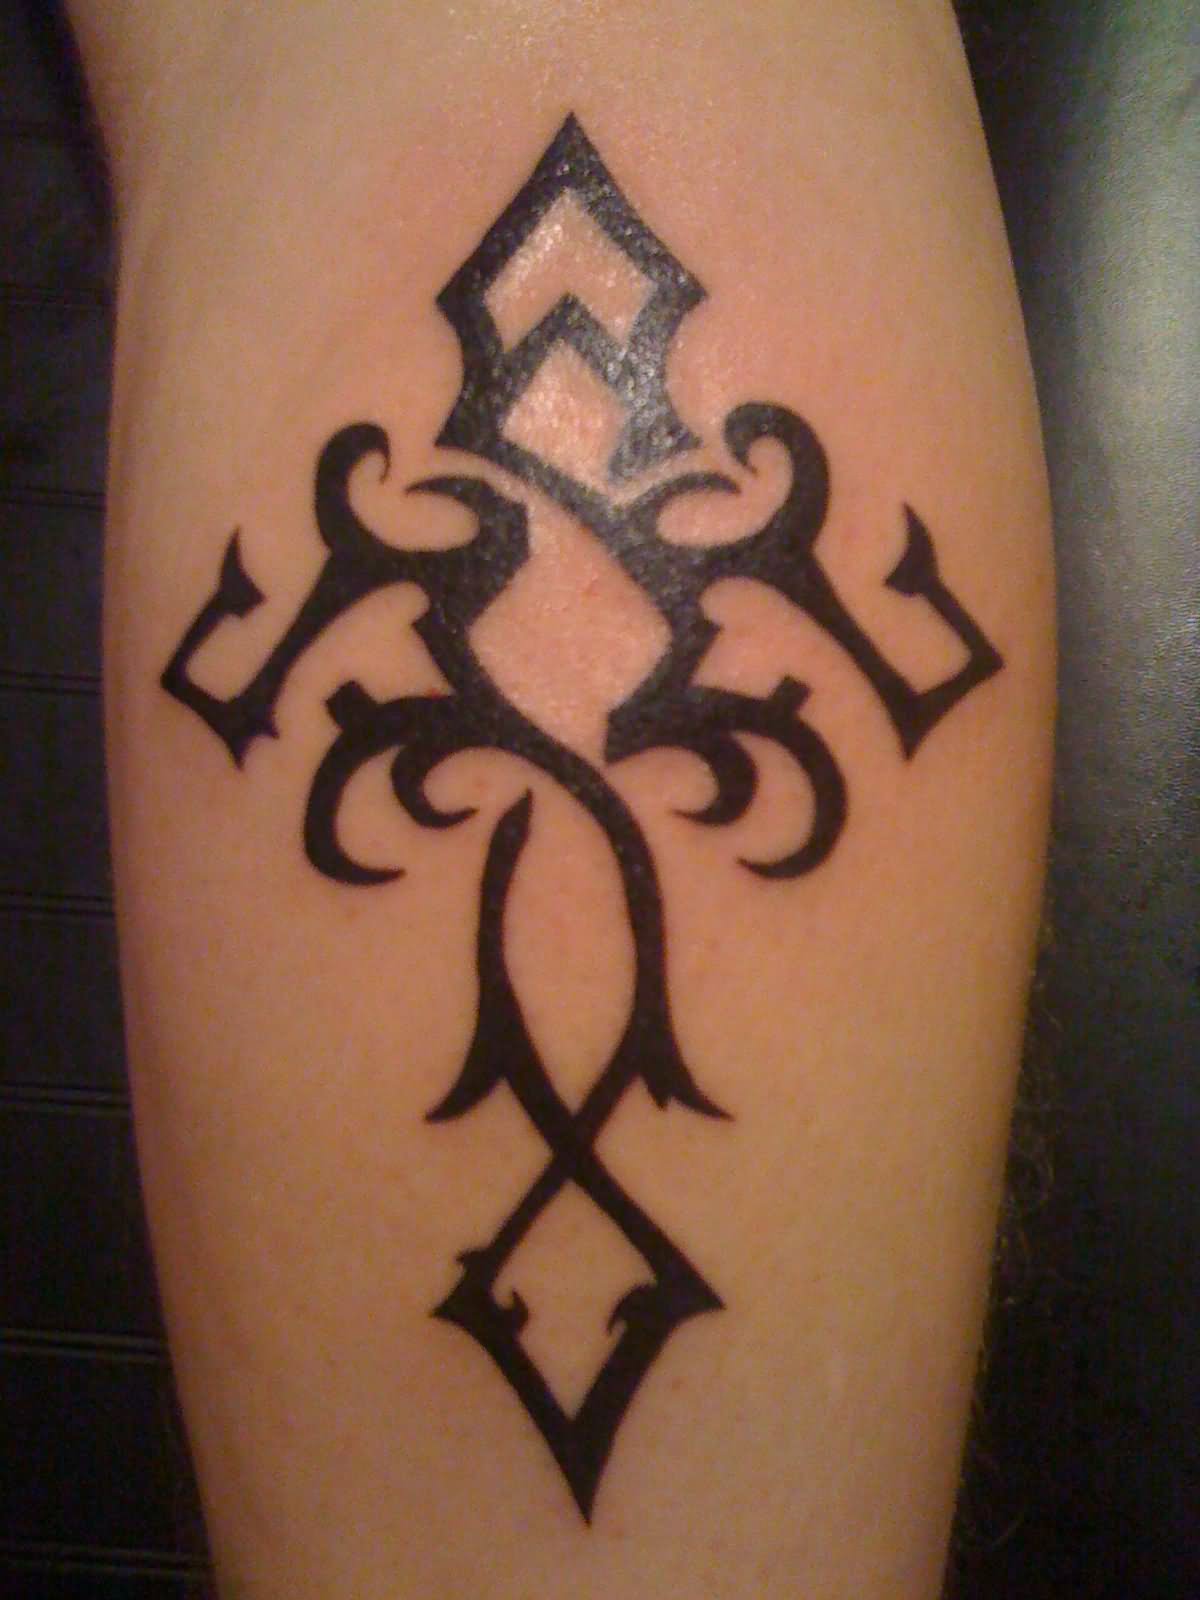 Black Tribal Christian Cross Tattoo Design For Leg